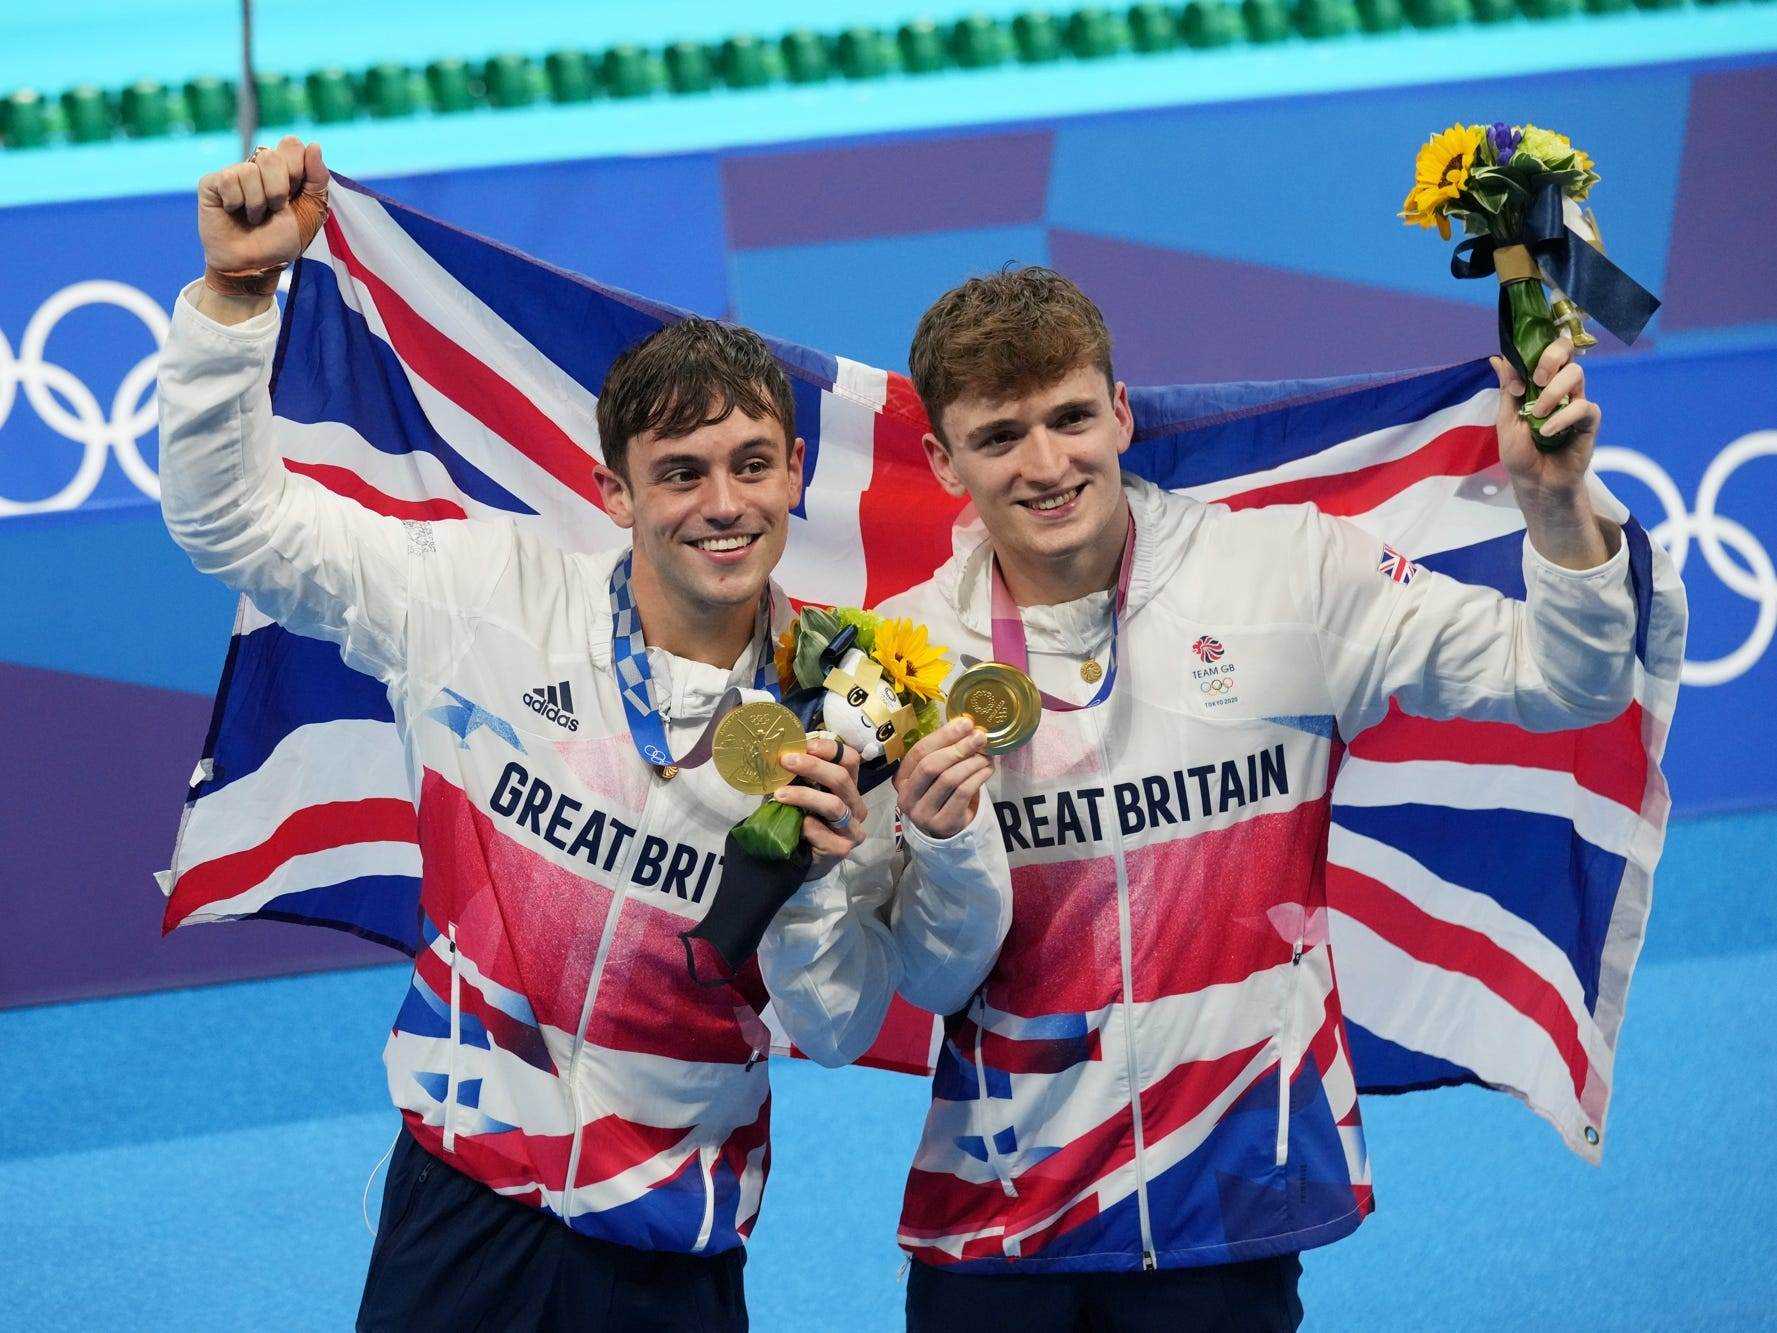 Tom Daley (links) und Matty Lee (rechts) halten bei den Olympischen Spielen 2020 in Tokio ihre Goldmedaillen auf dem Podium.